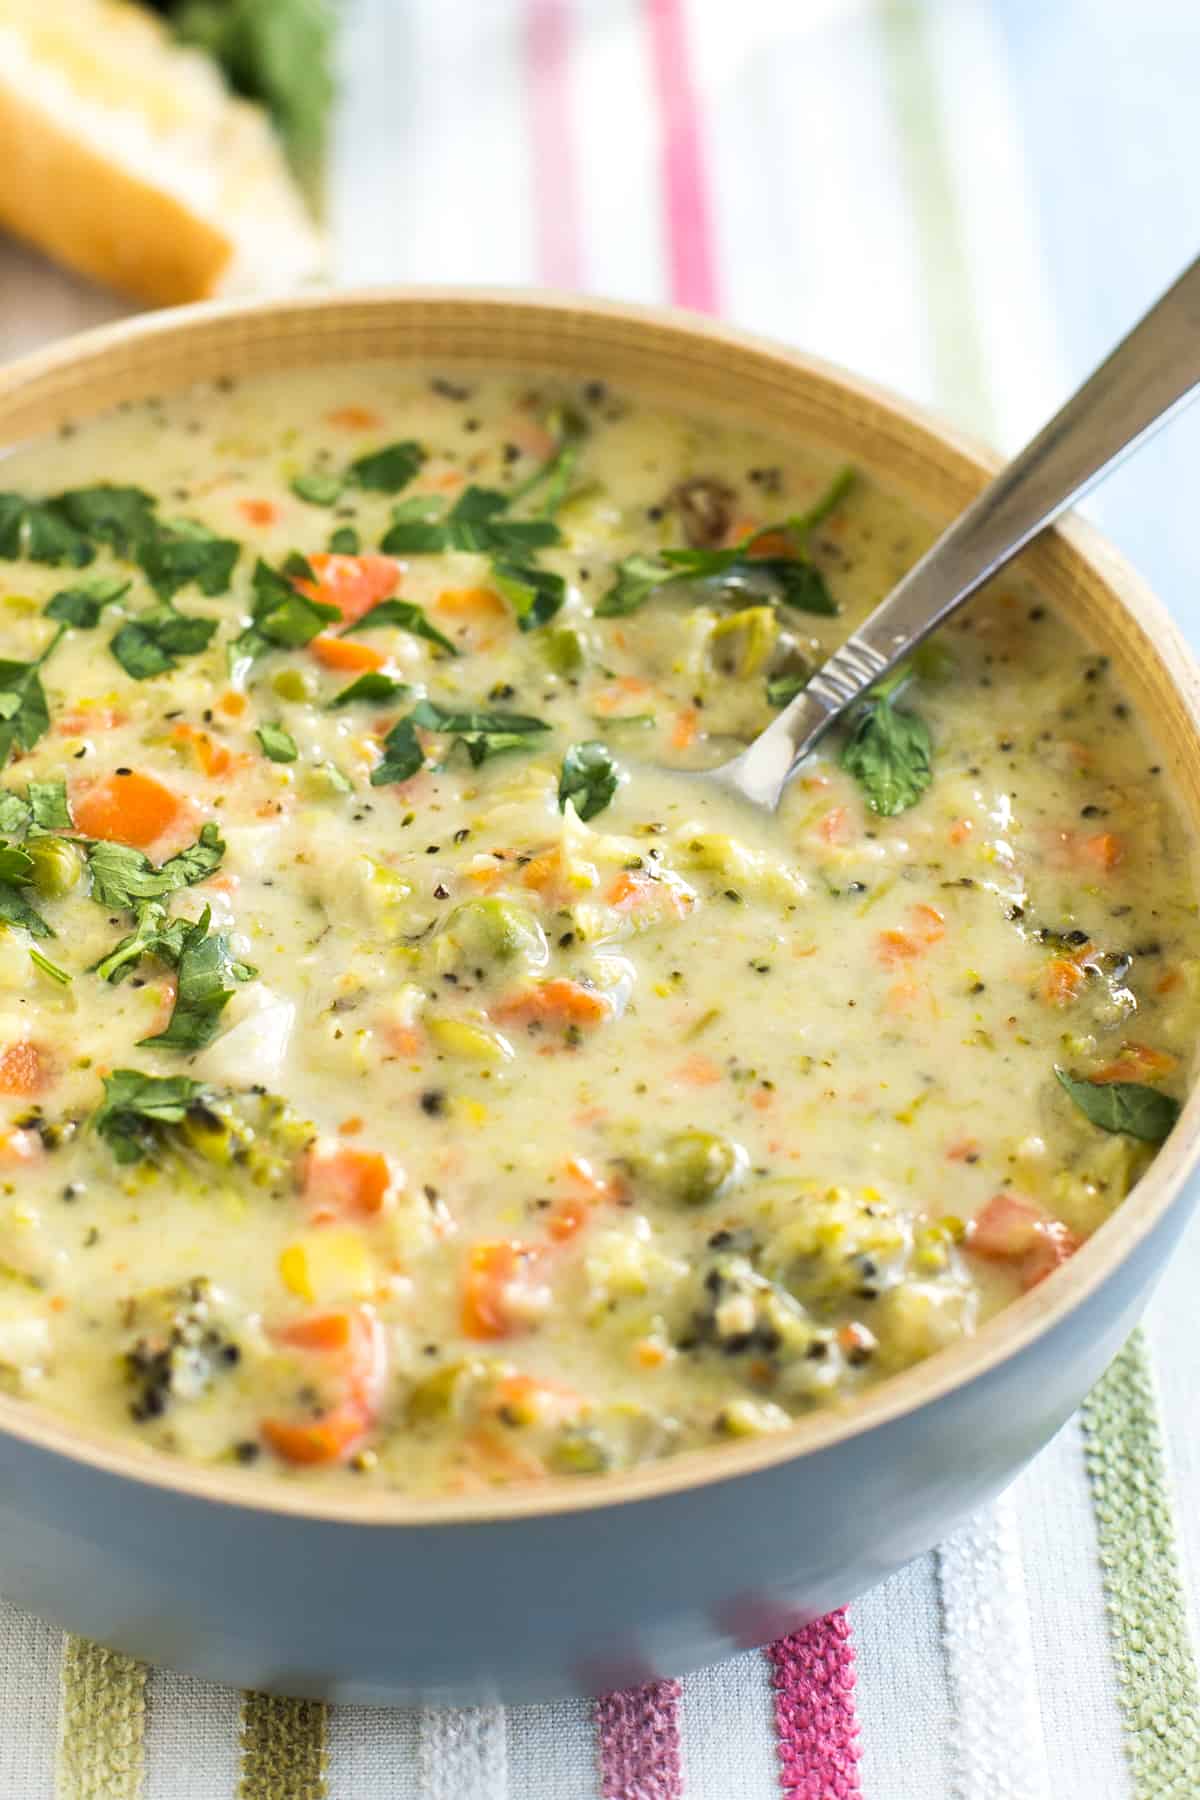 Bowlful of creamy veggie pot pie soup with a spoon